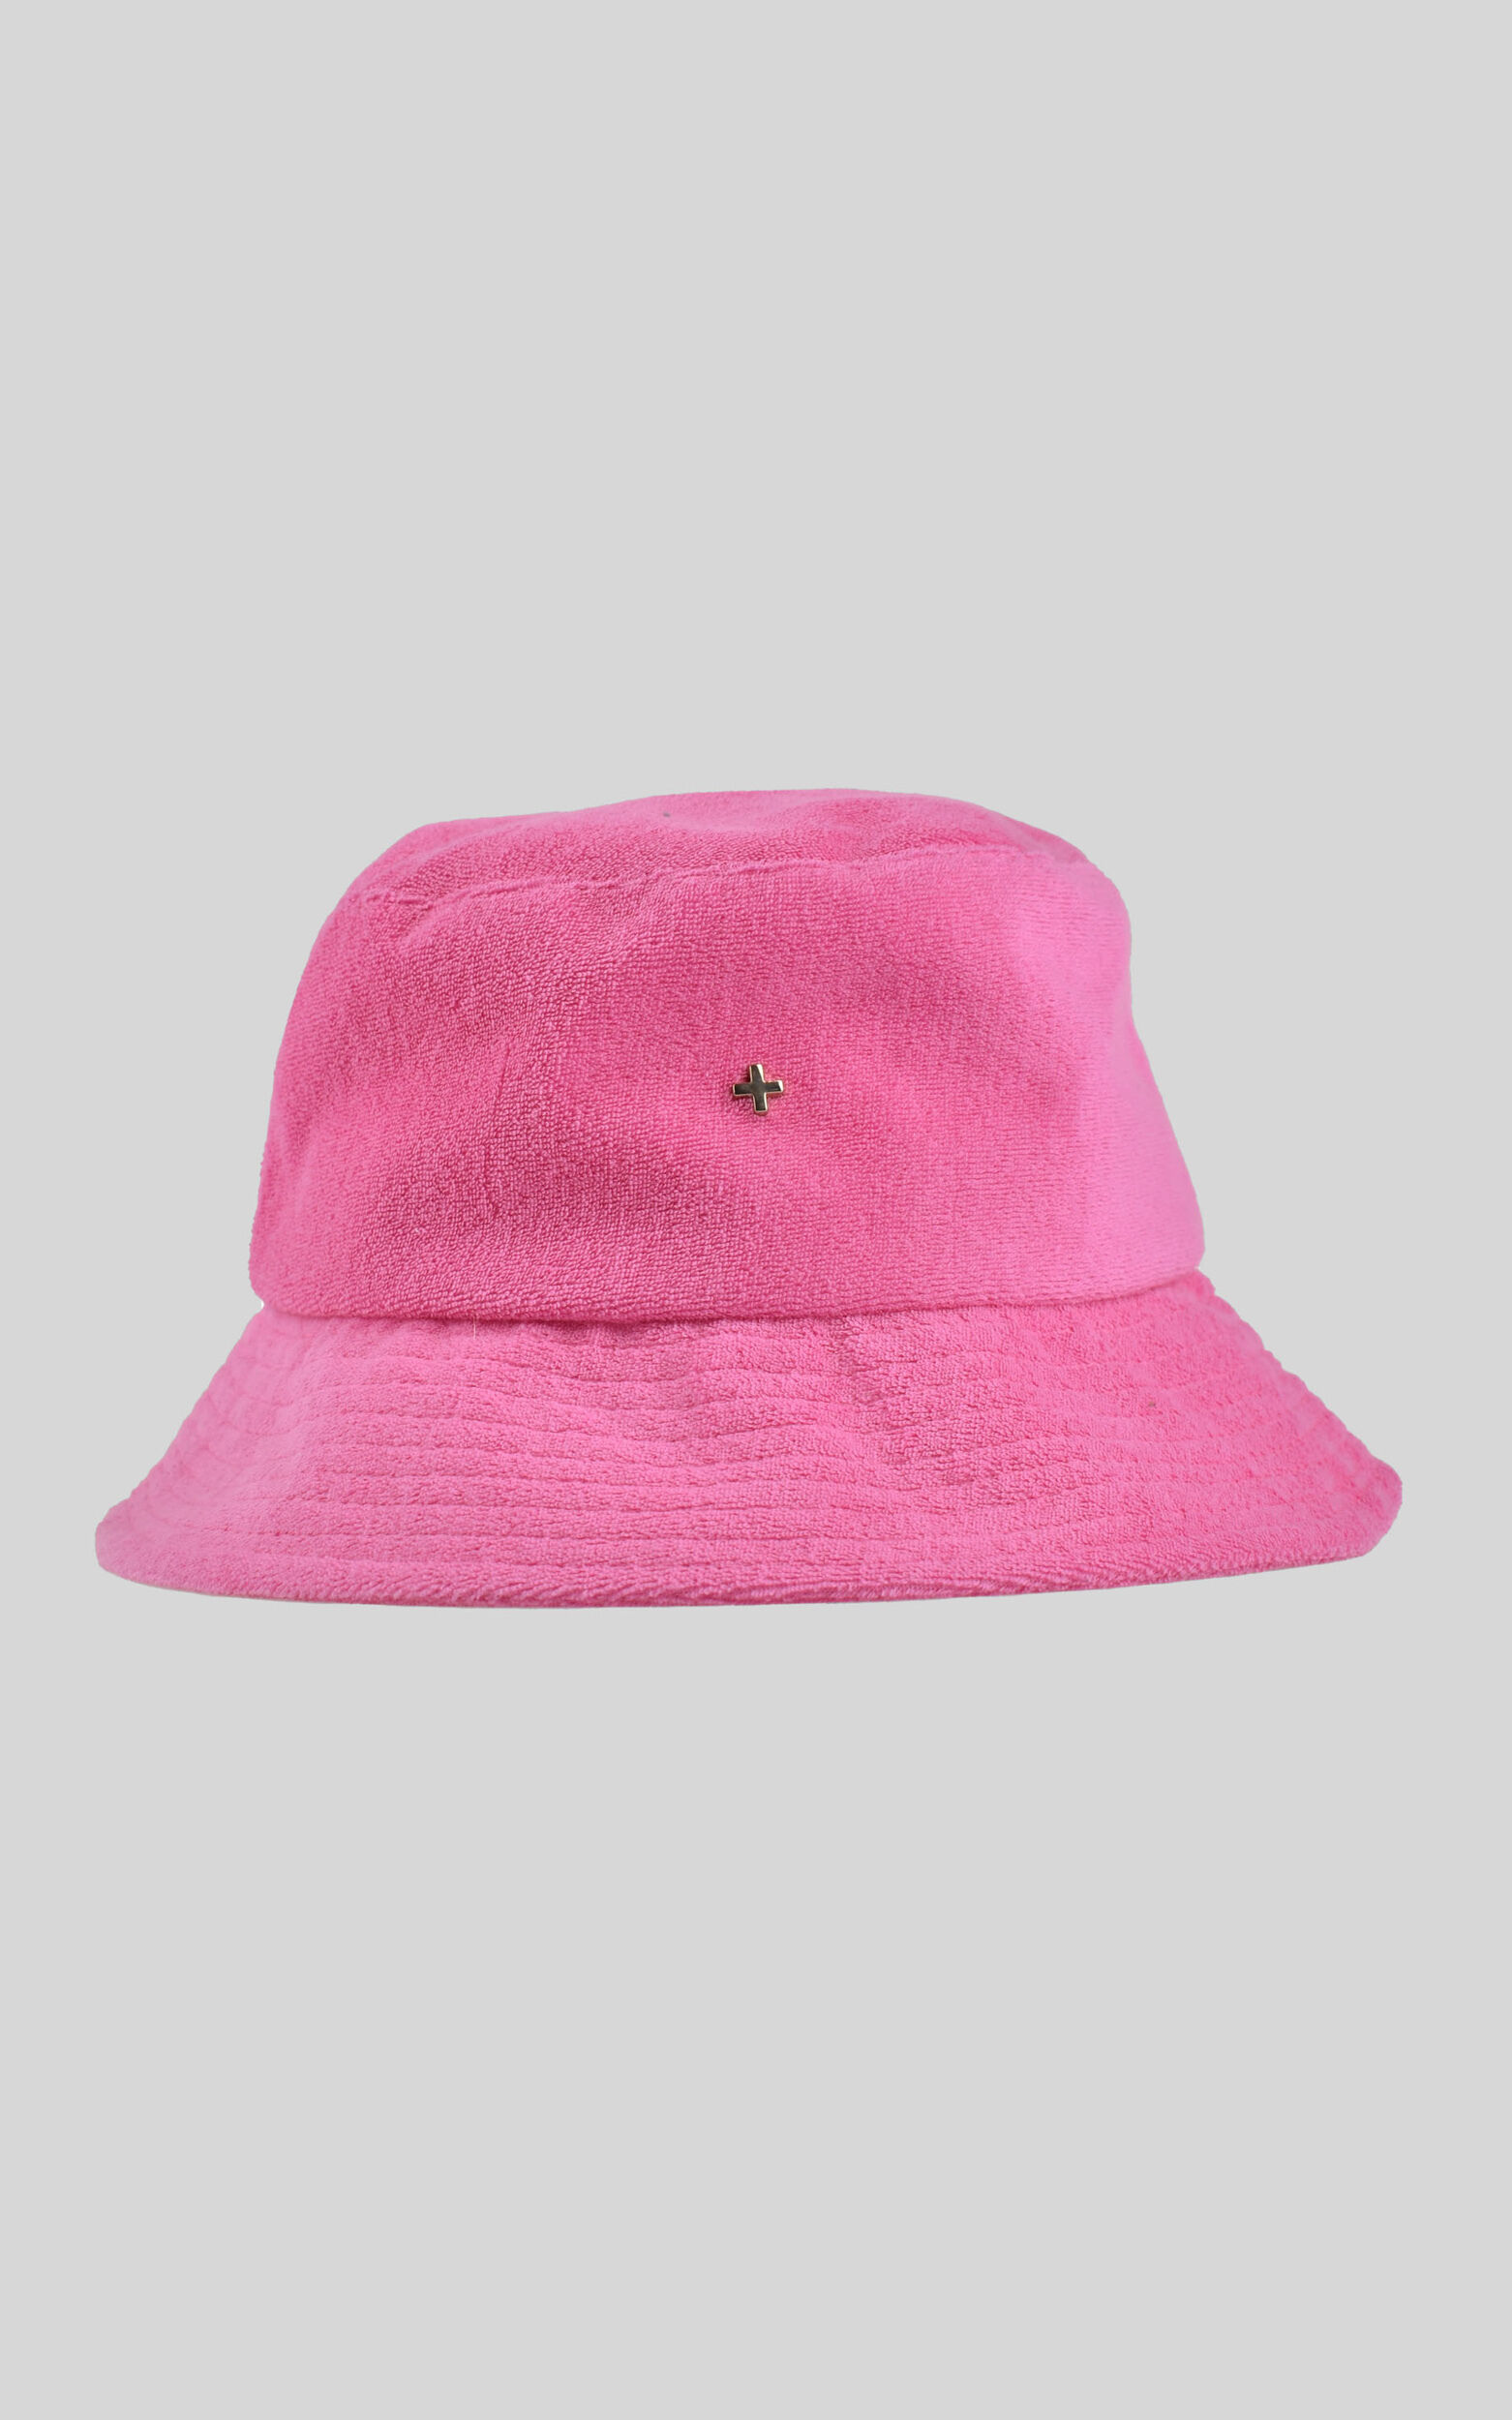 Peta And Jain - Tobi Bucket Hat in Pink - NoSize, PNK1, super-hi-res image number null